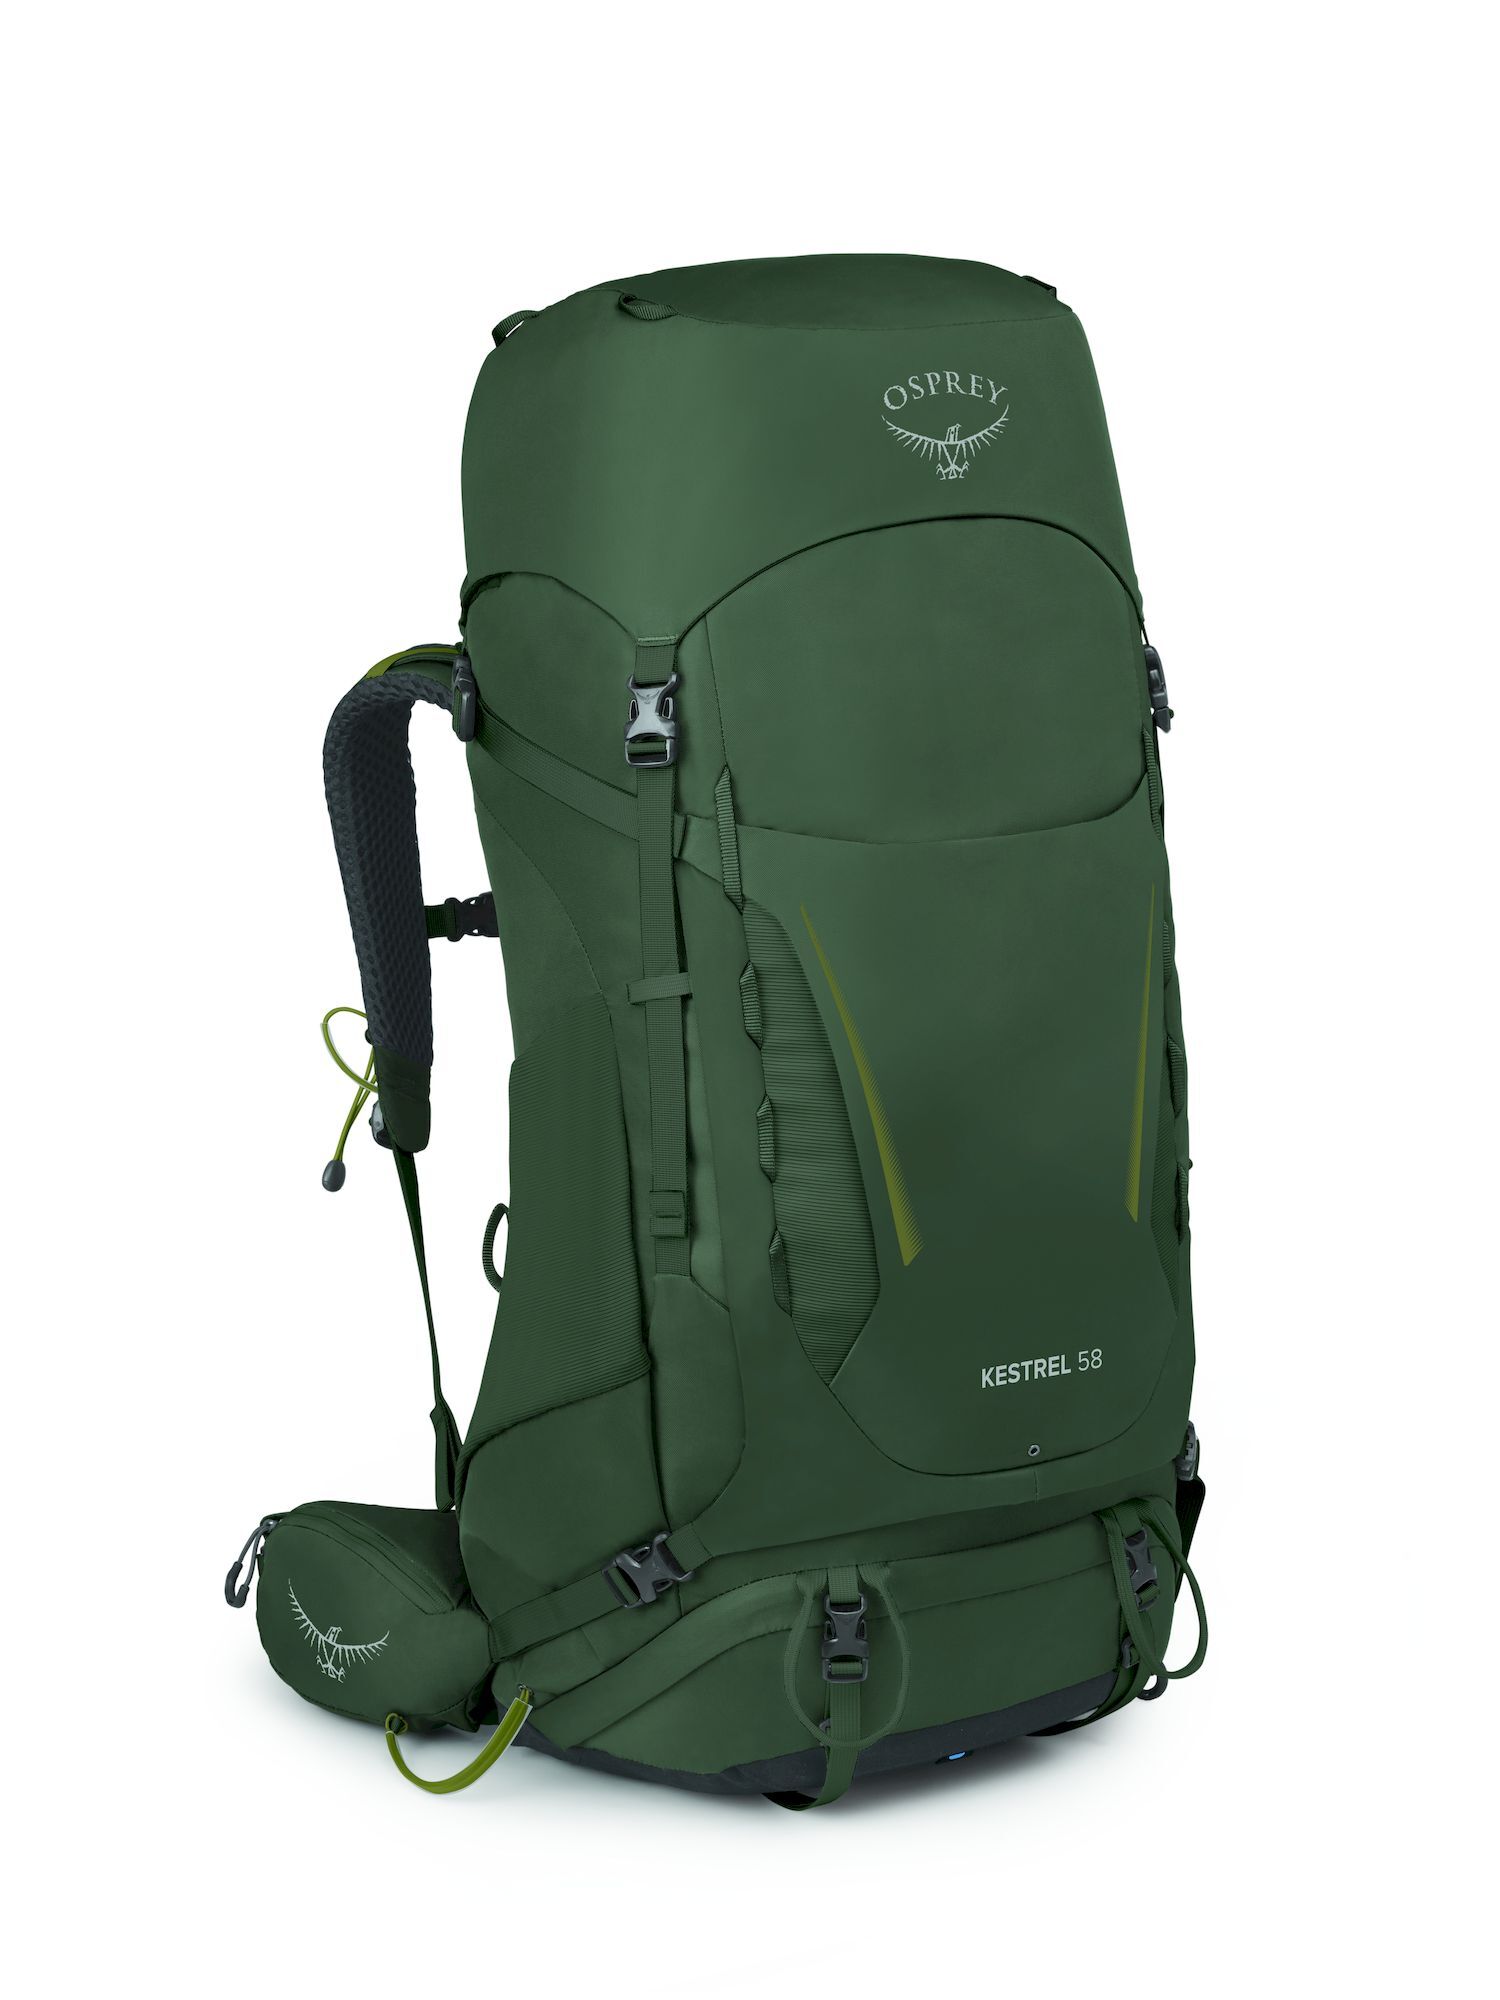 Osprey Kestrel 58 - Hiking backpack - Men's